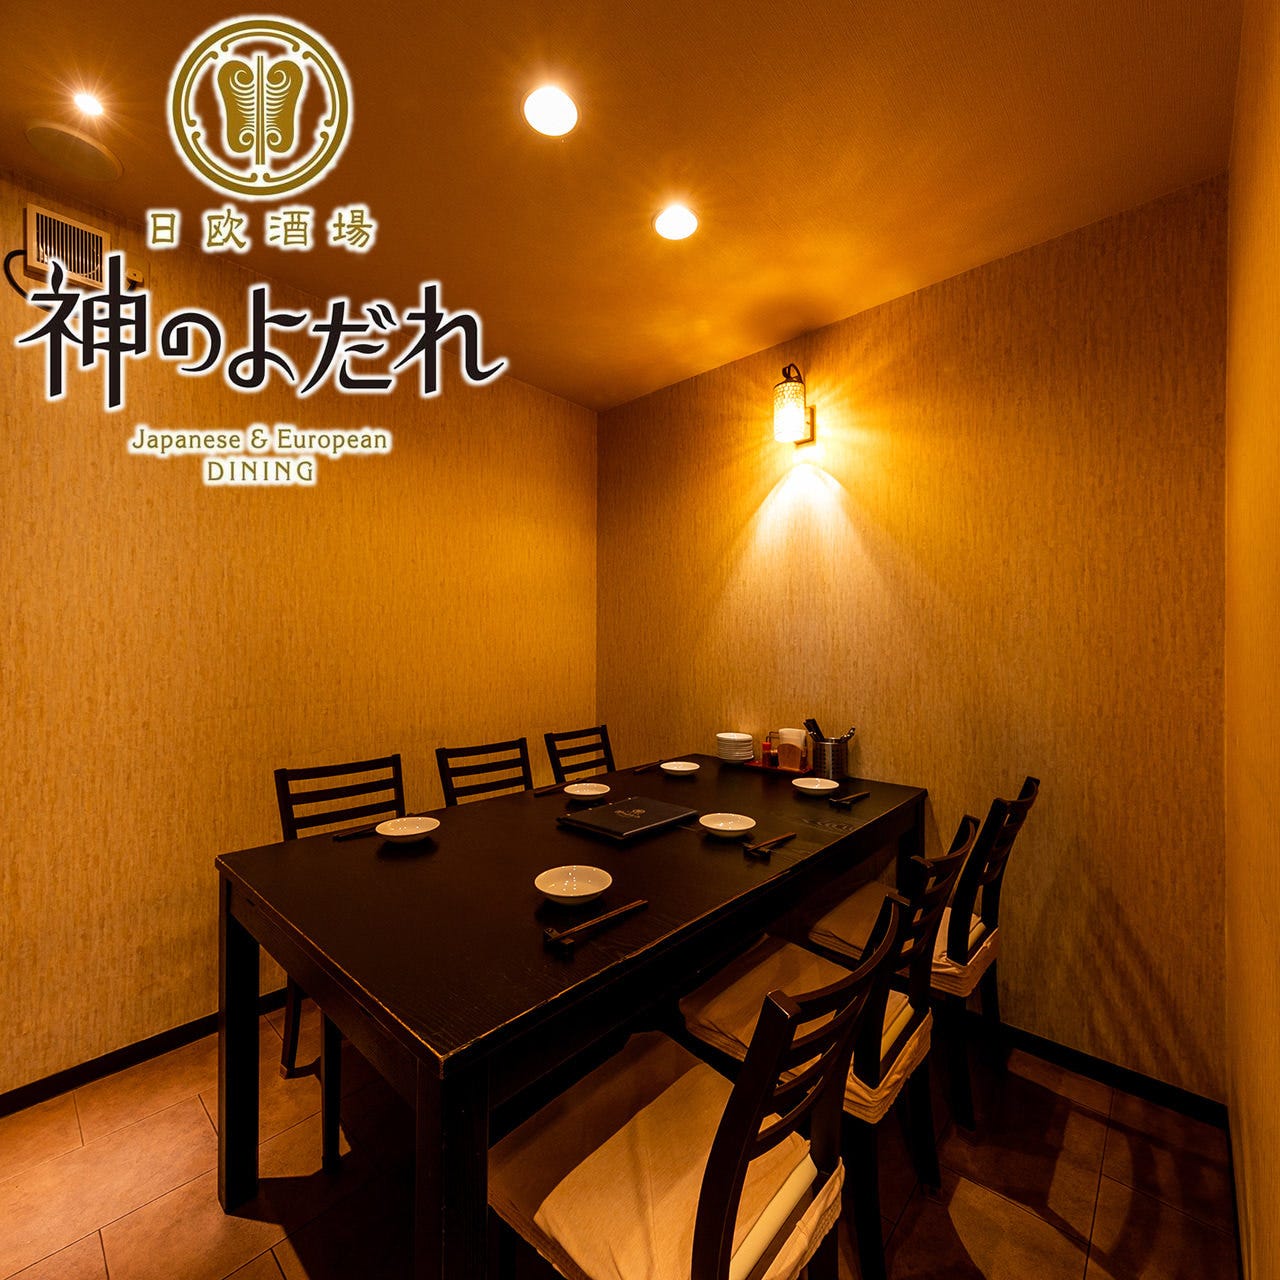 個室あり 町田の接待 会食におすすめしたい人気店 日経 大人のレストランガイド